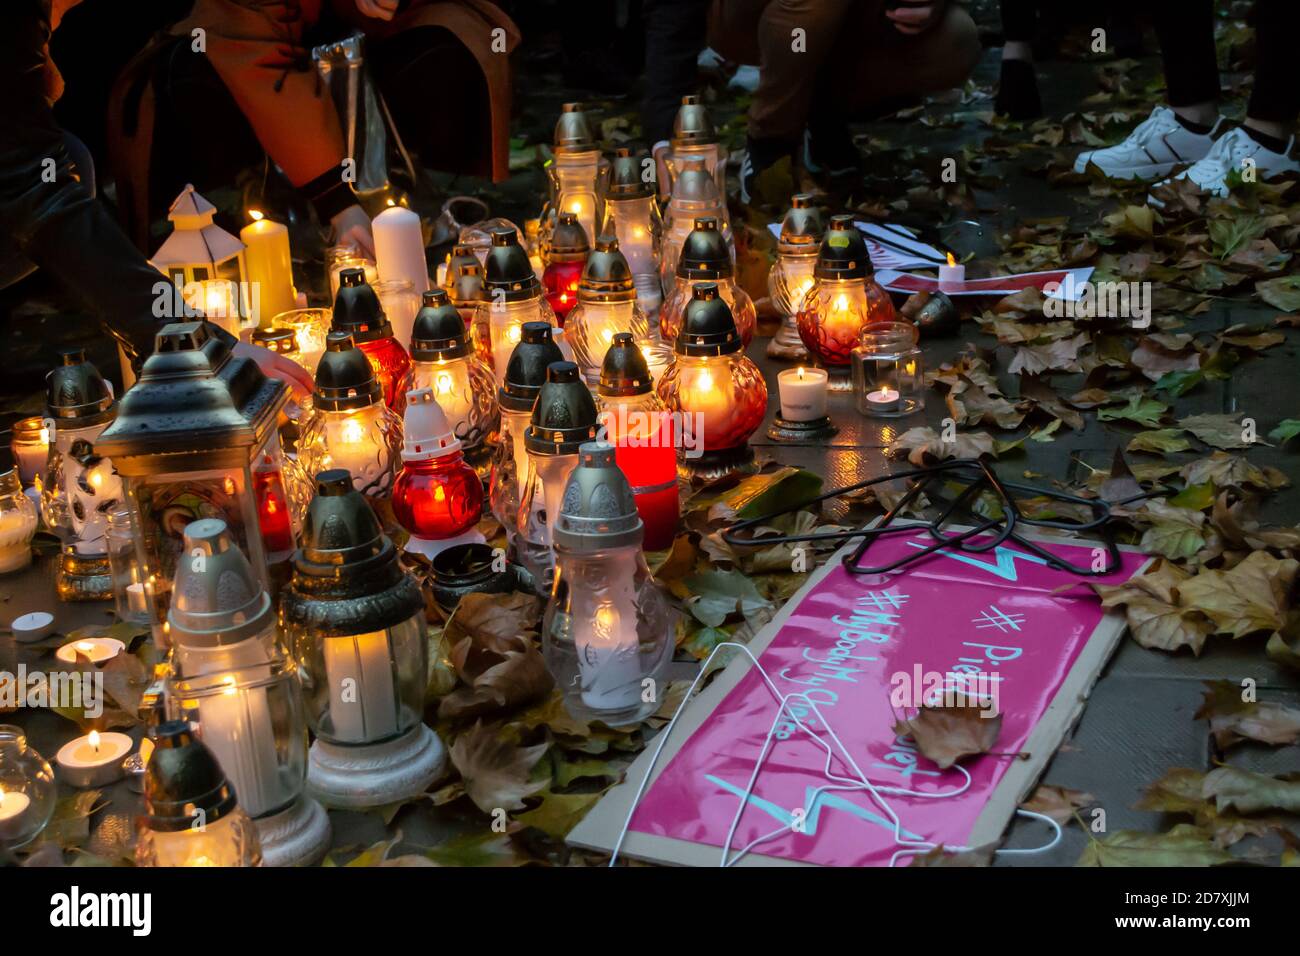 LONDON/ENGLAND - 24. Oktober 2020: Kerzen, Schilder und Kleiderbügel vor der polnischen Botschaft protestieren gegen neue Abtreibungsgesetze in Polen Stockfoto